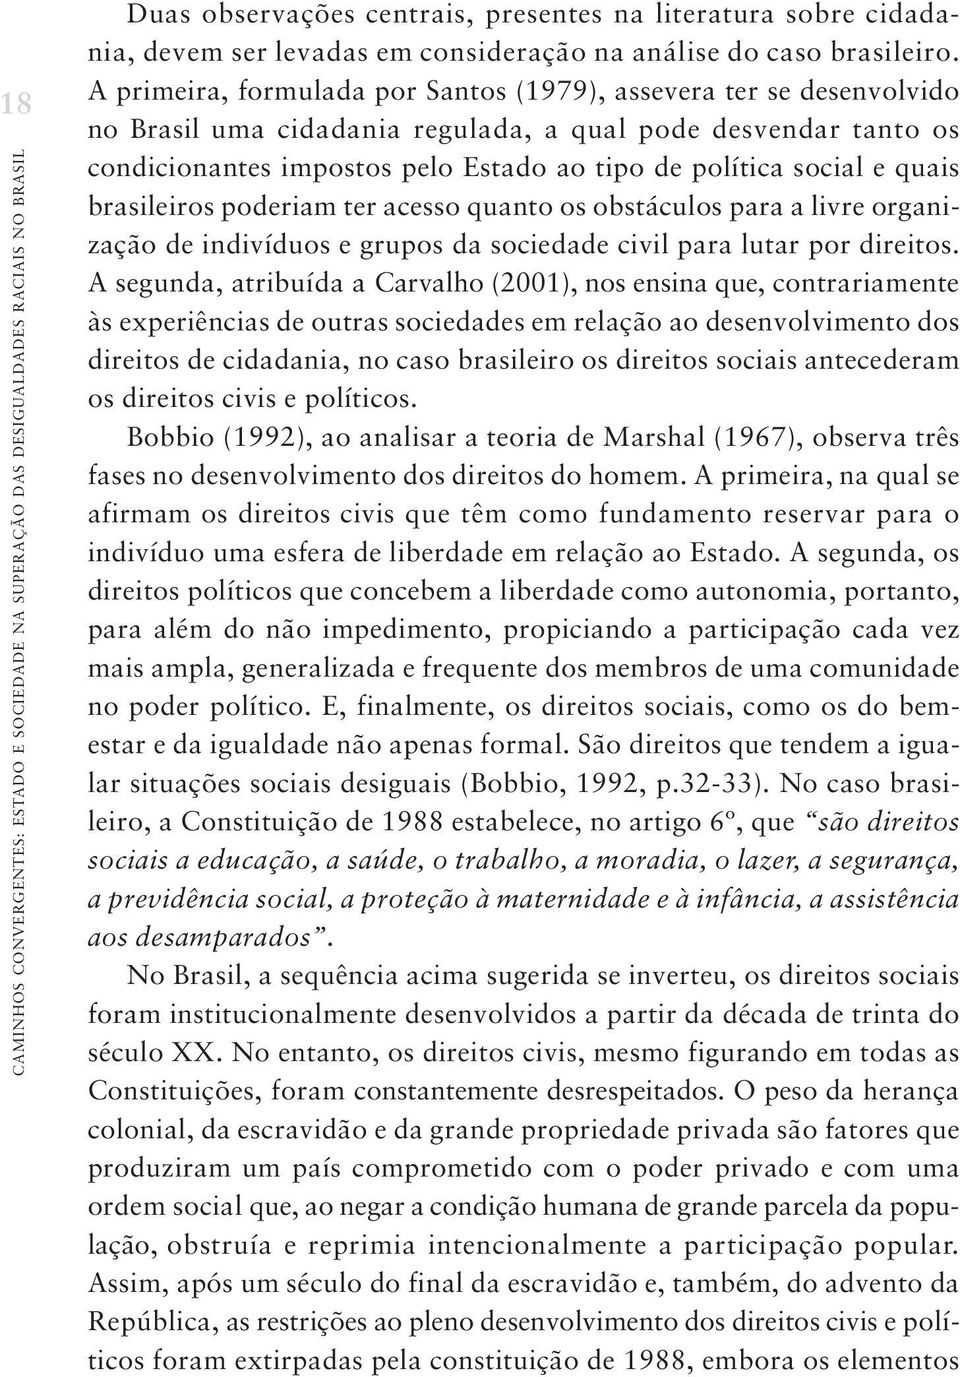 A primeira, formulada por Santos (1979), assevera ter se desenvolvido no Brasil uma cidadania regulada, a qual pode desvendar tanto os condicionantes impostos pelo Estado ao tipo de política social e